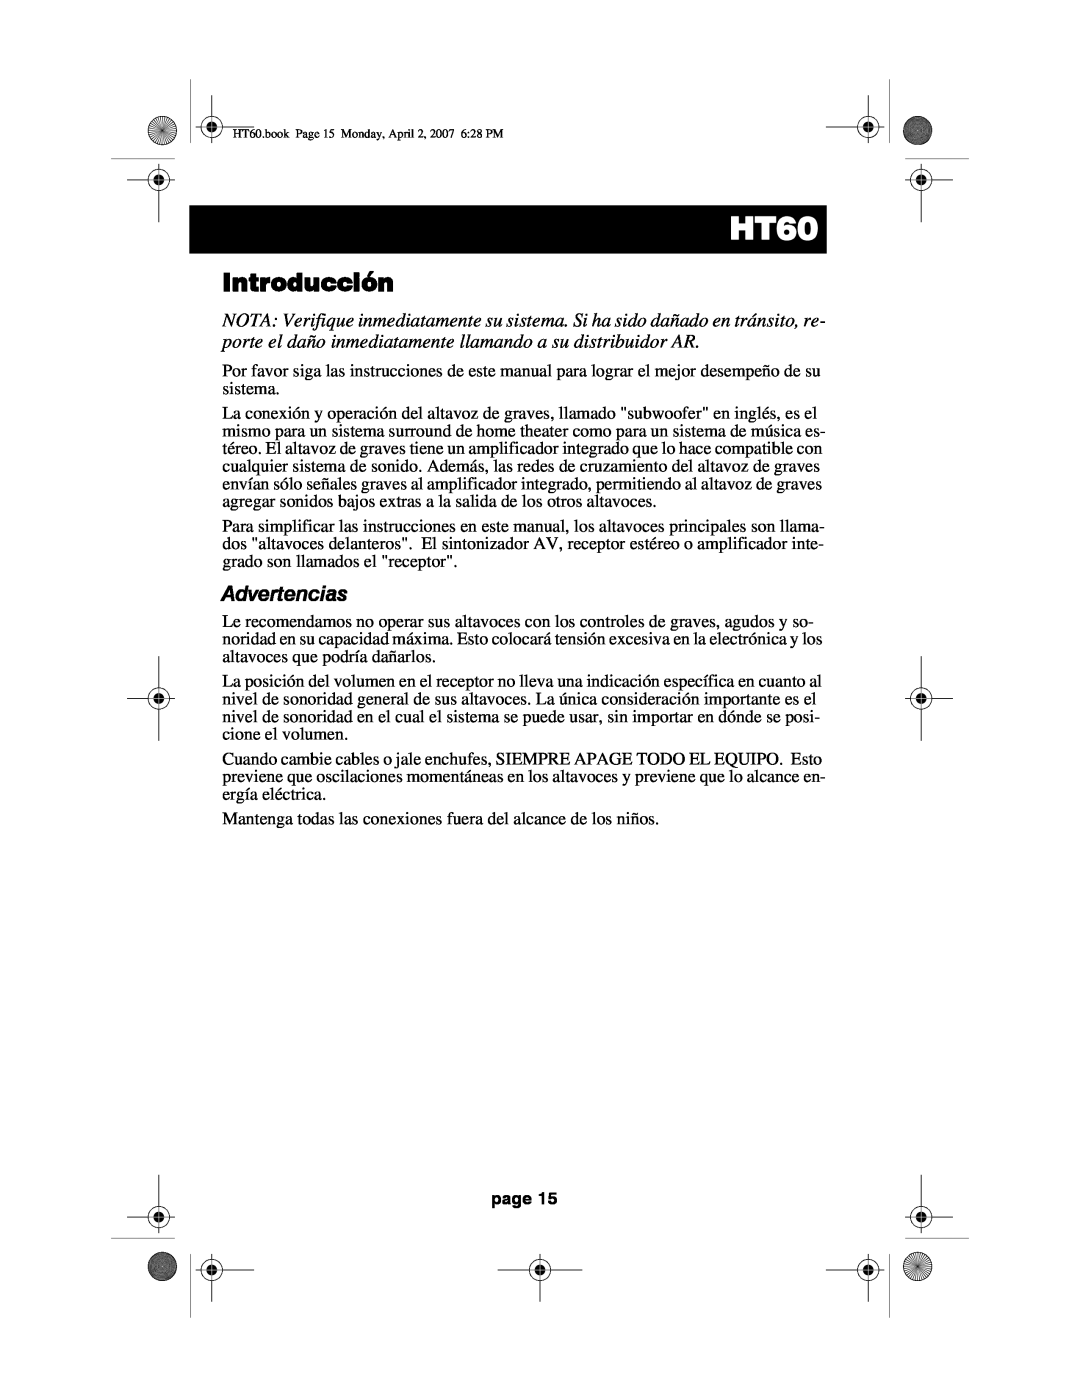 Acoustic Research HT60 operation manual Introducción, Advertencias, page 